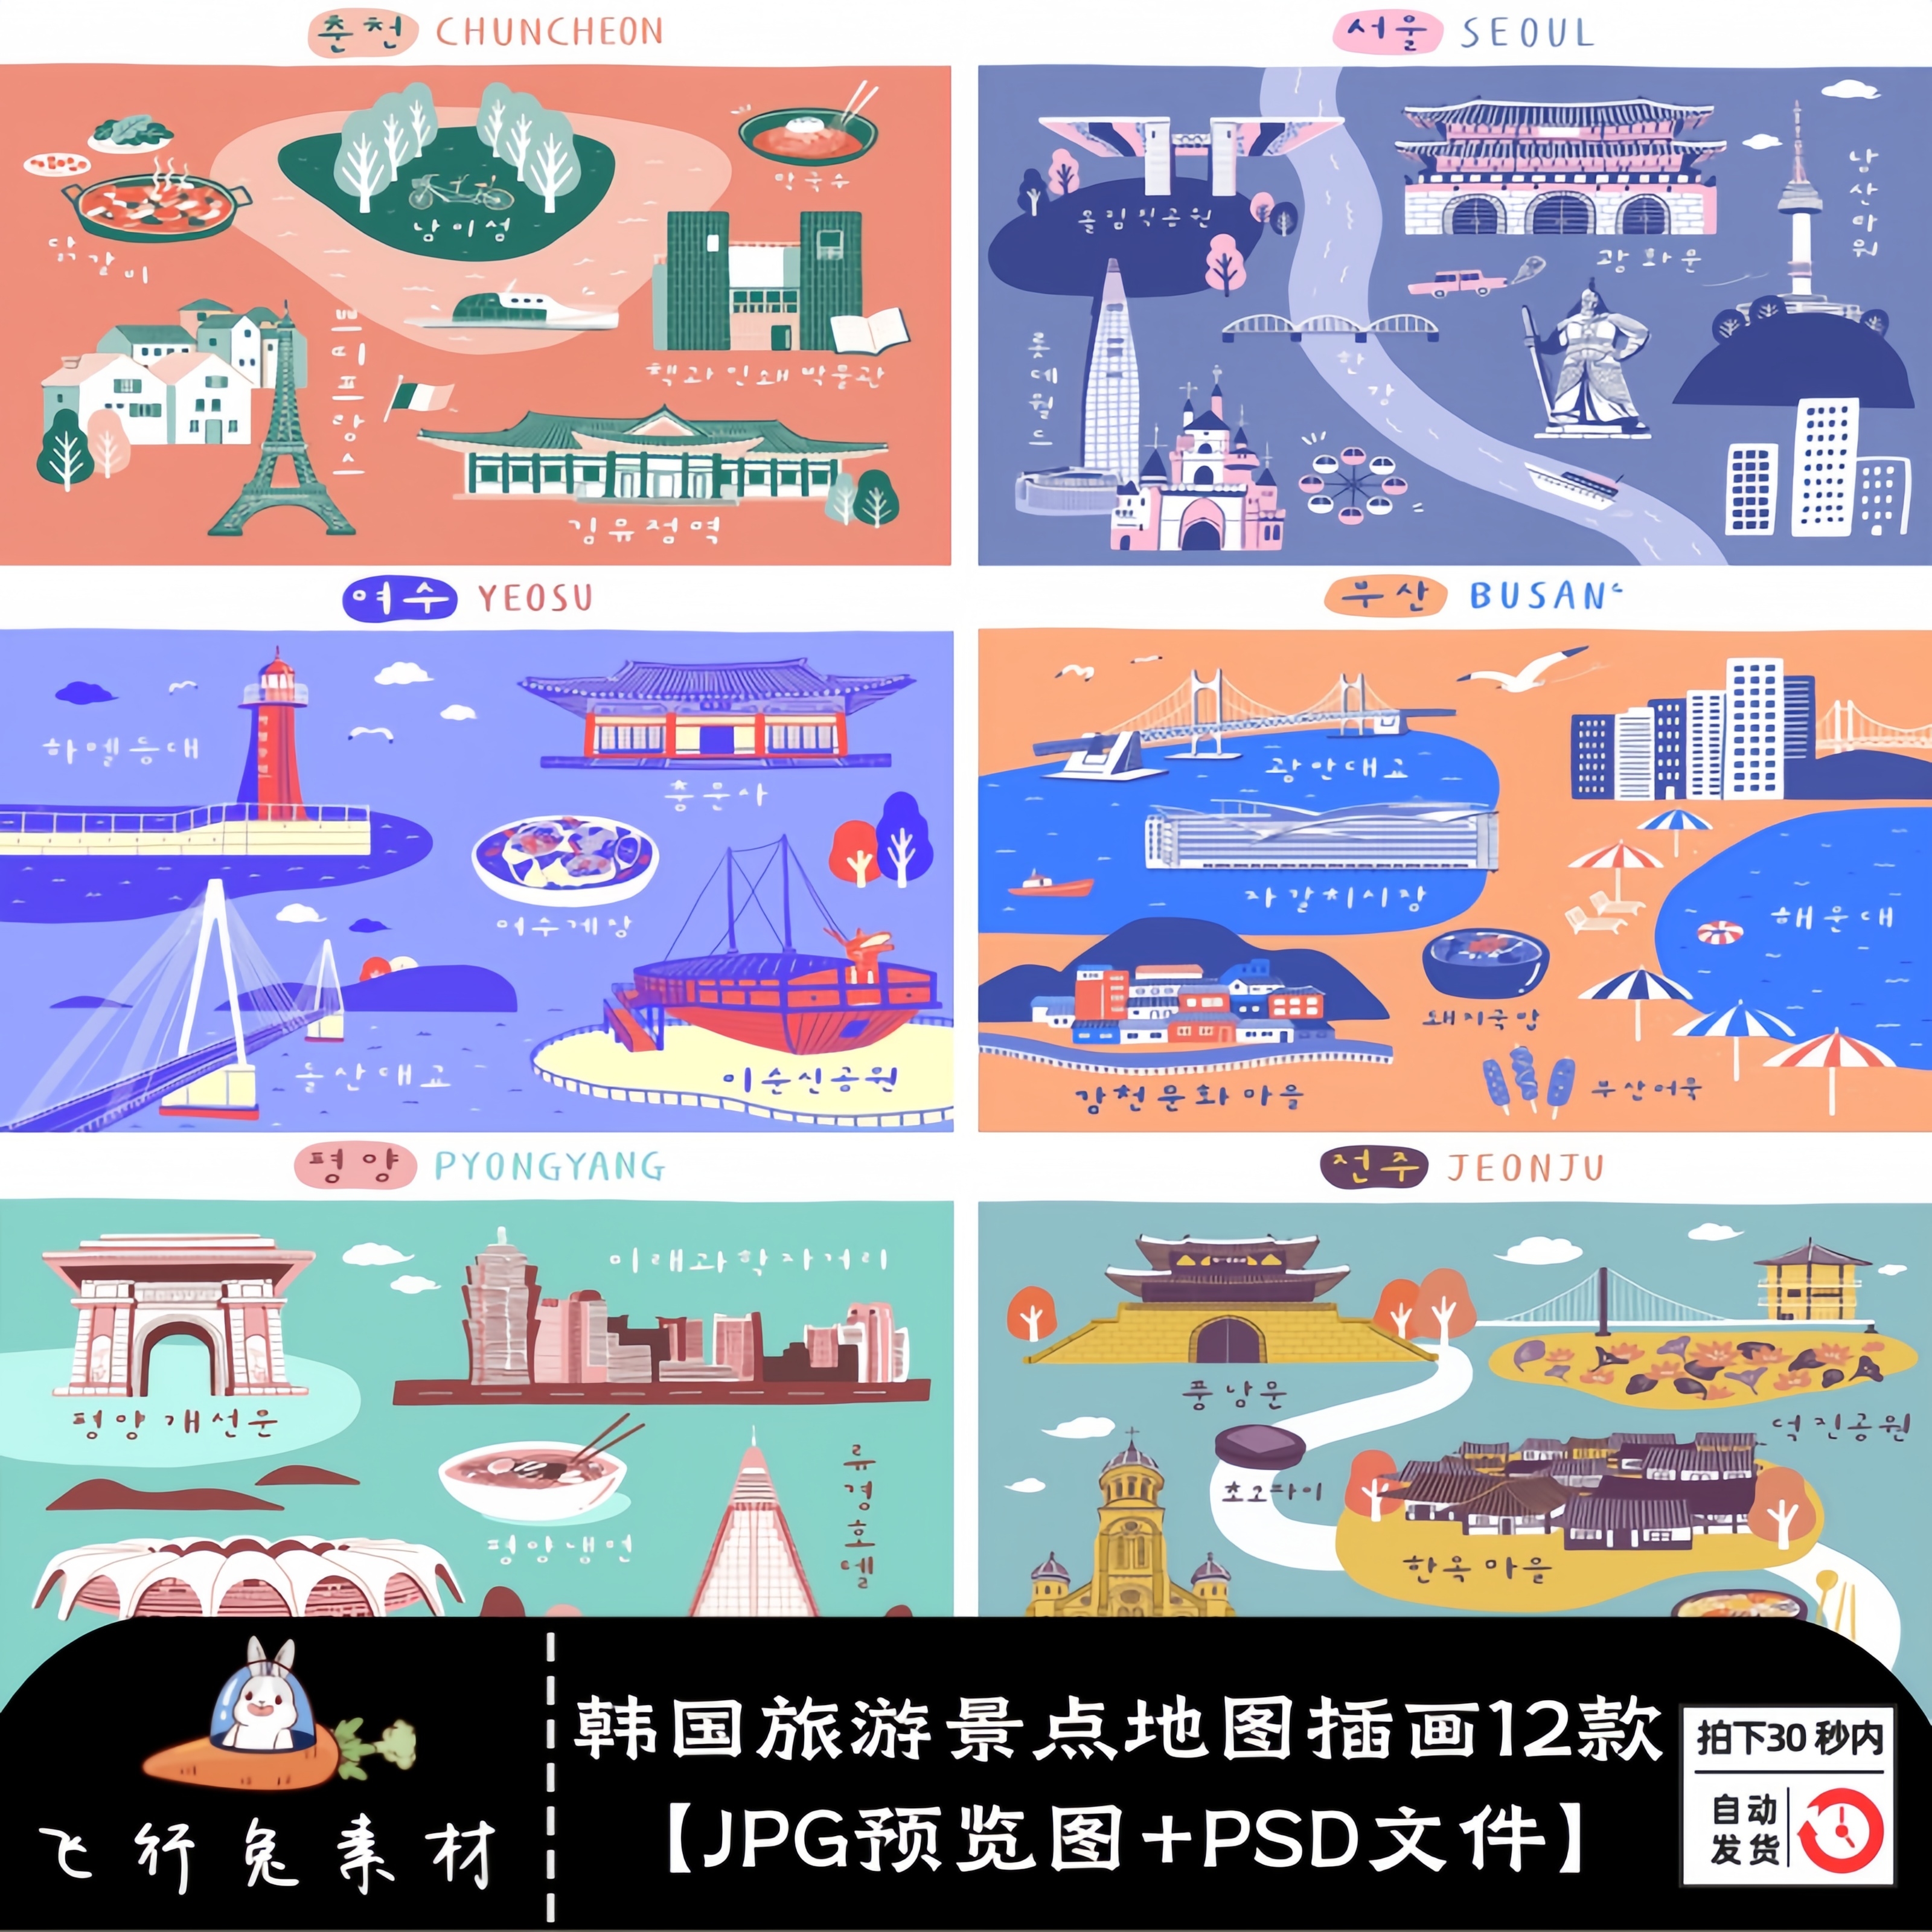 韩国旅游首尔广州釜山济州岛手绘插画旅行景点地图海报PS设计素材